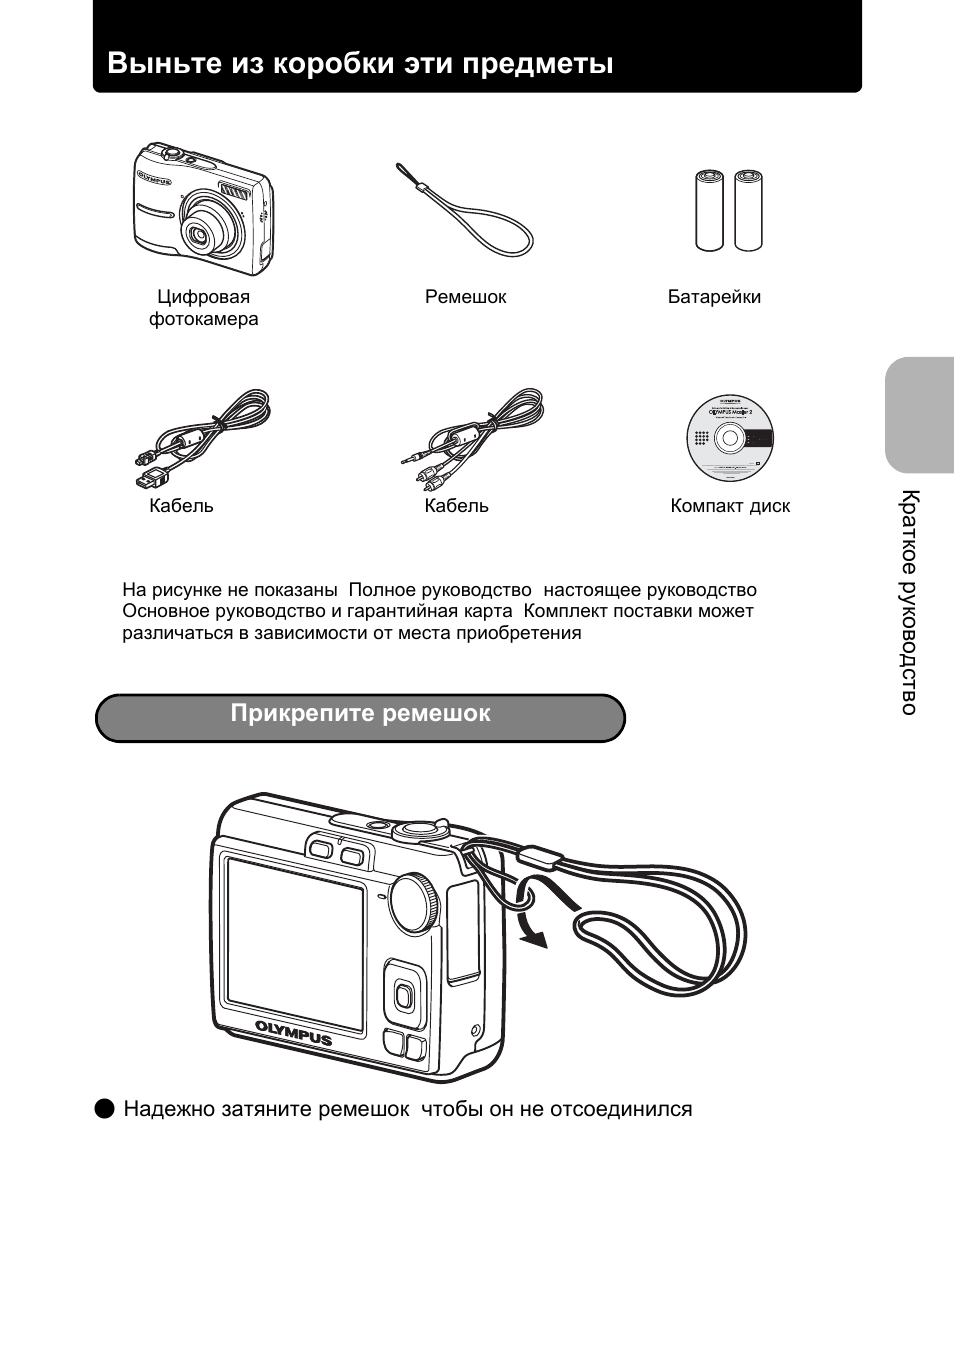 Видеокамера Olympus инструкция